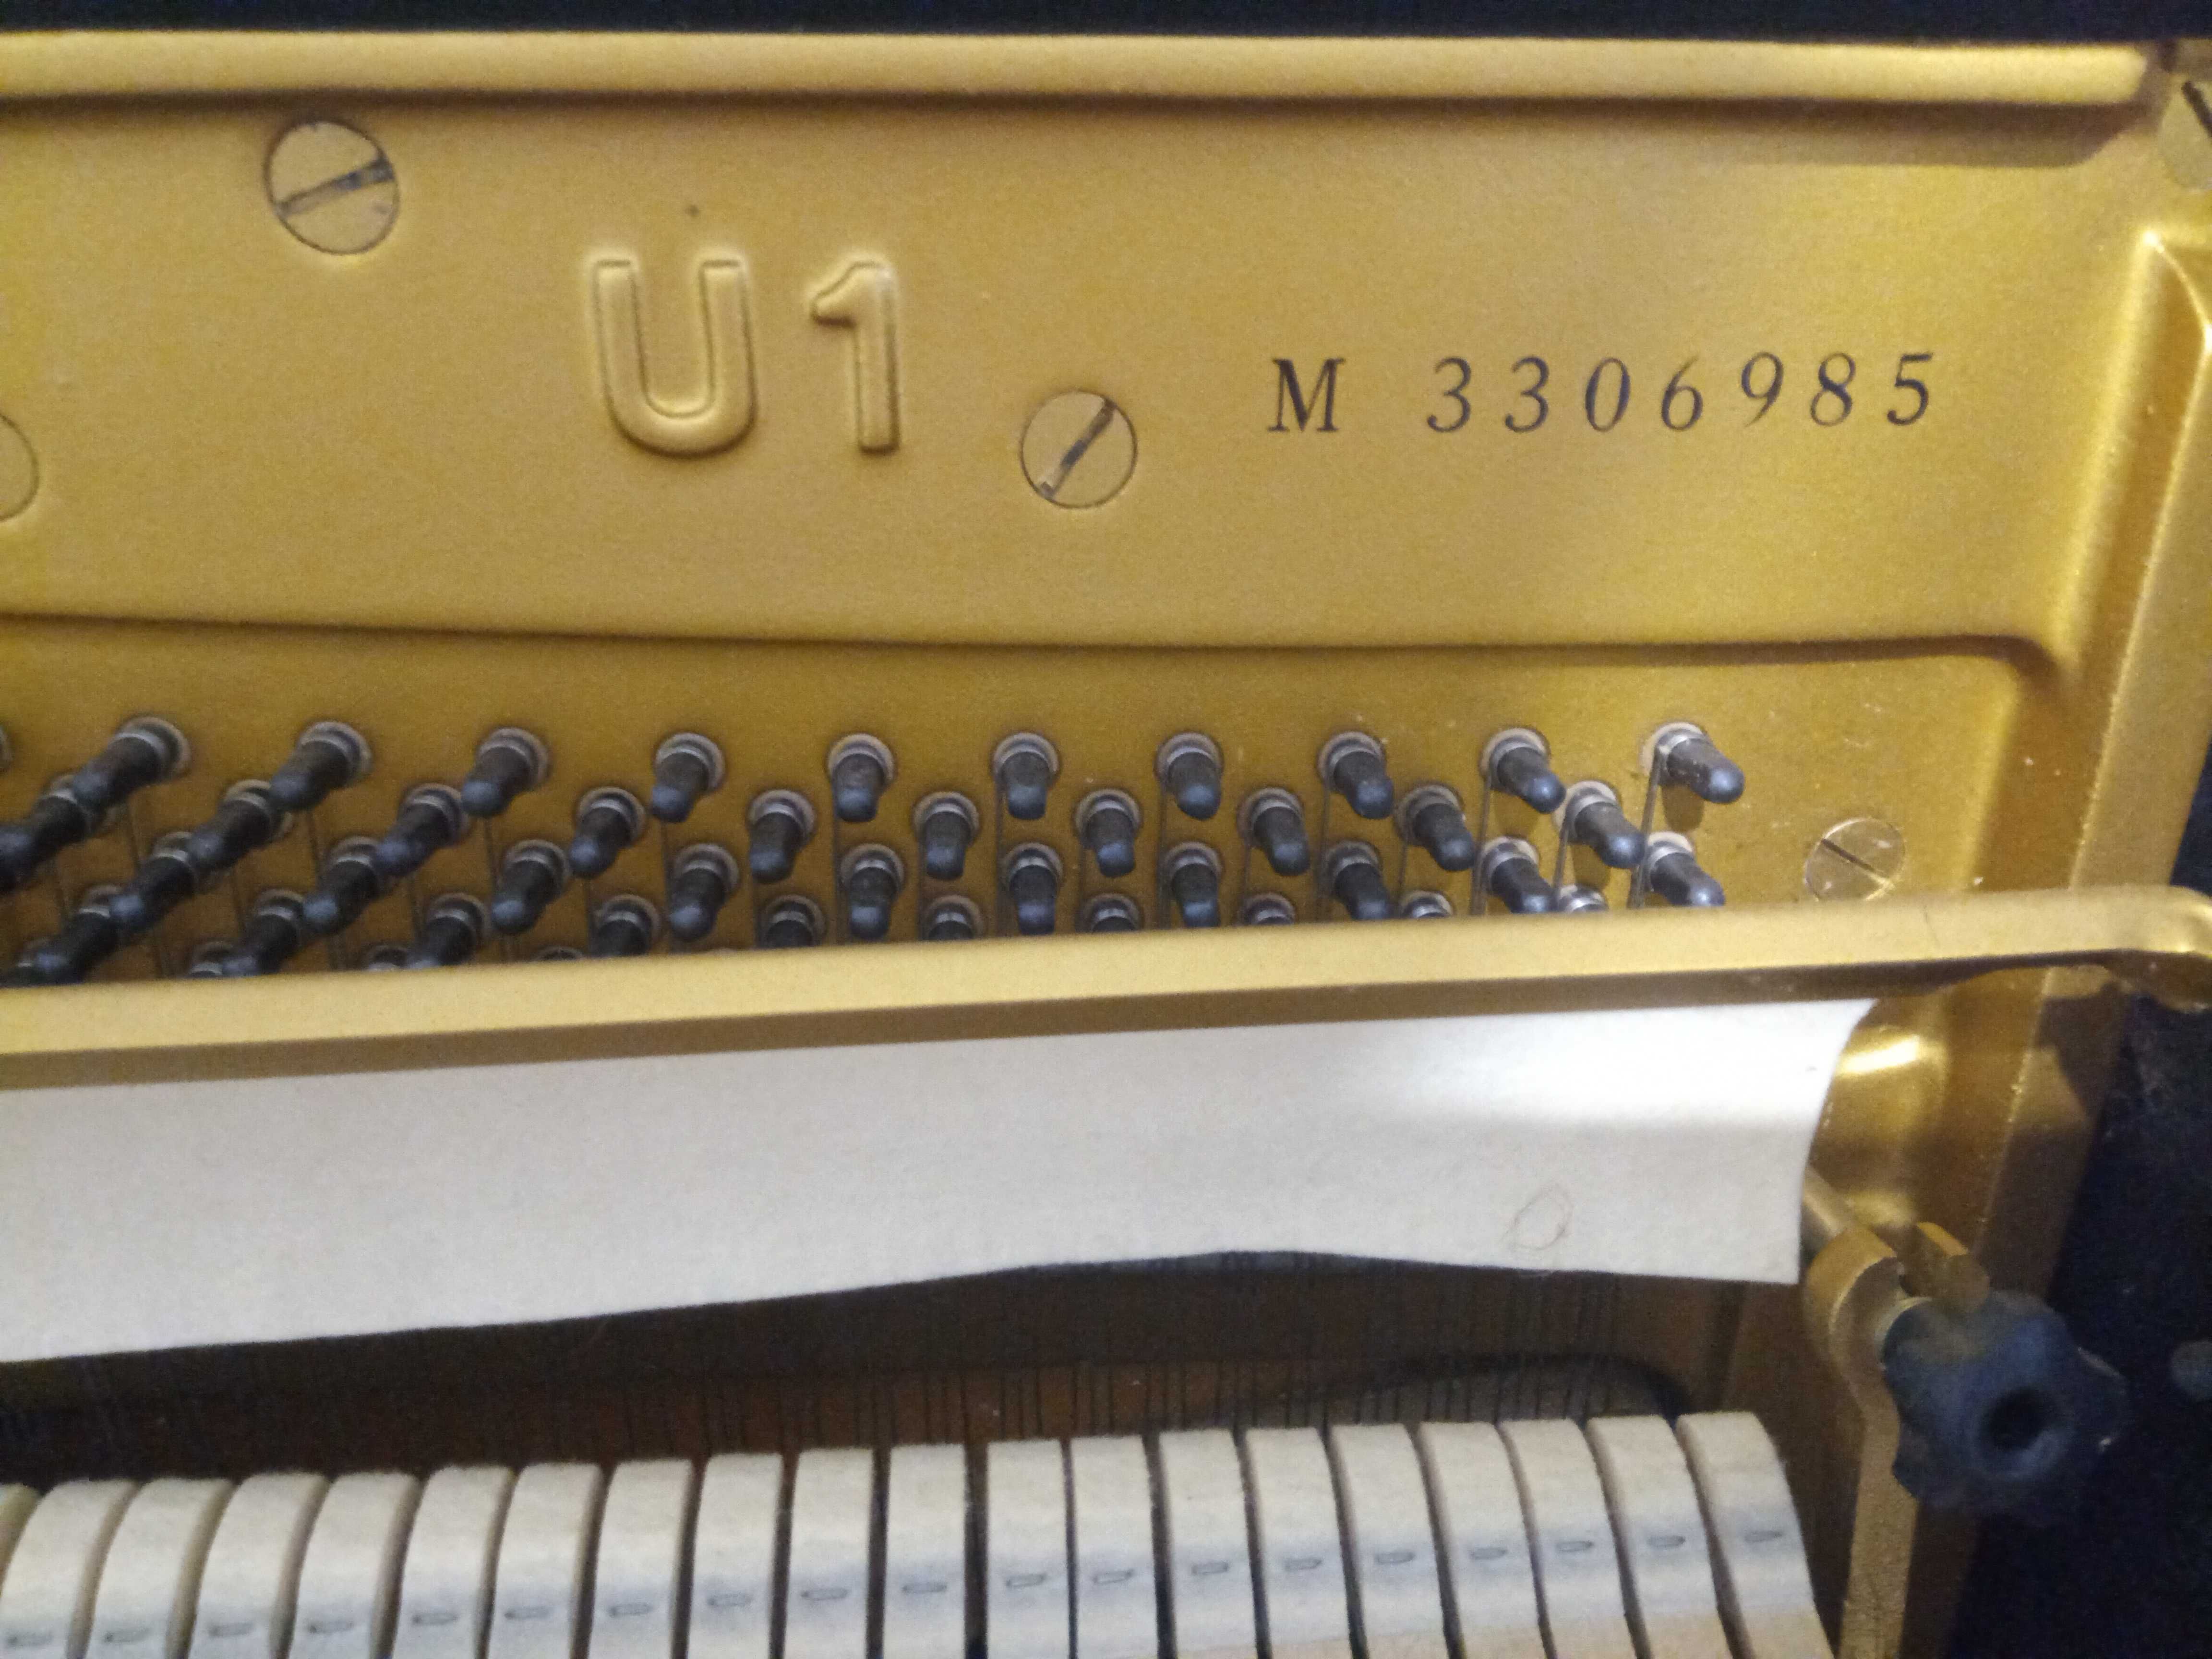 Upright Yamaha Piano U 1 M